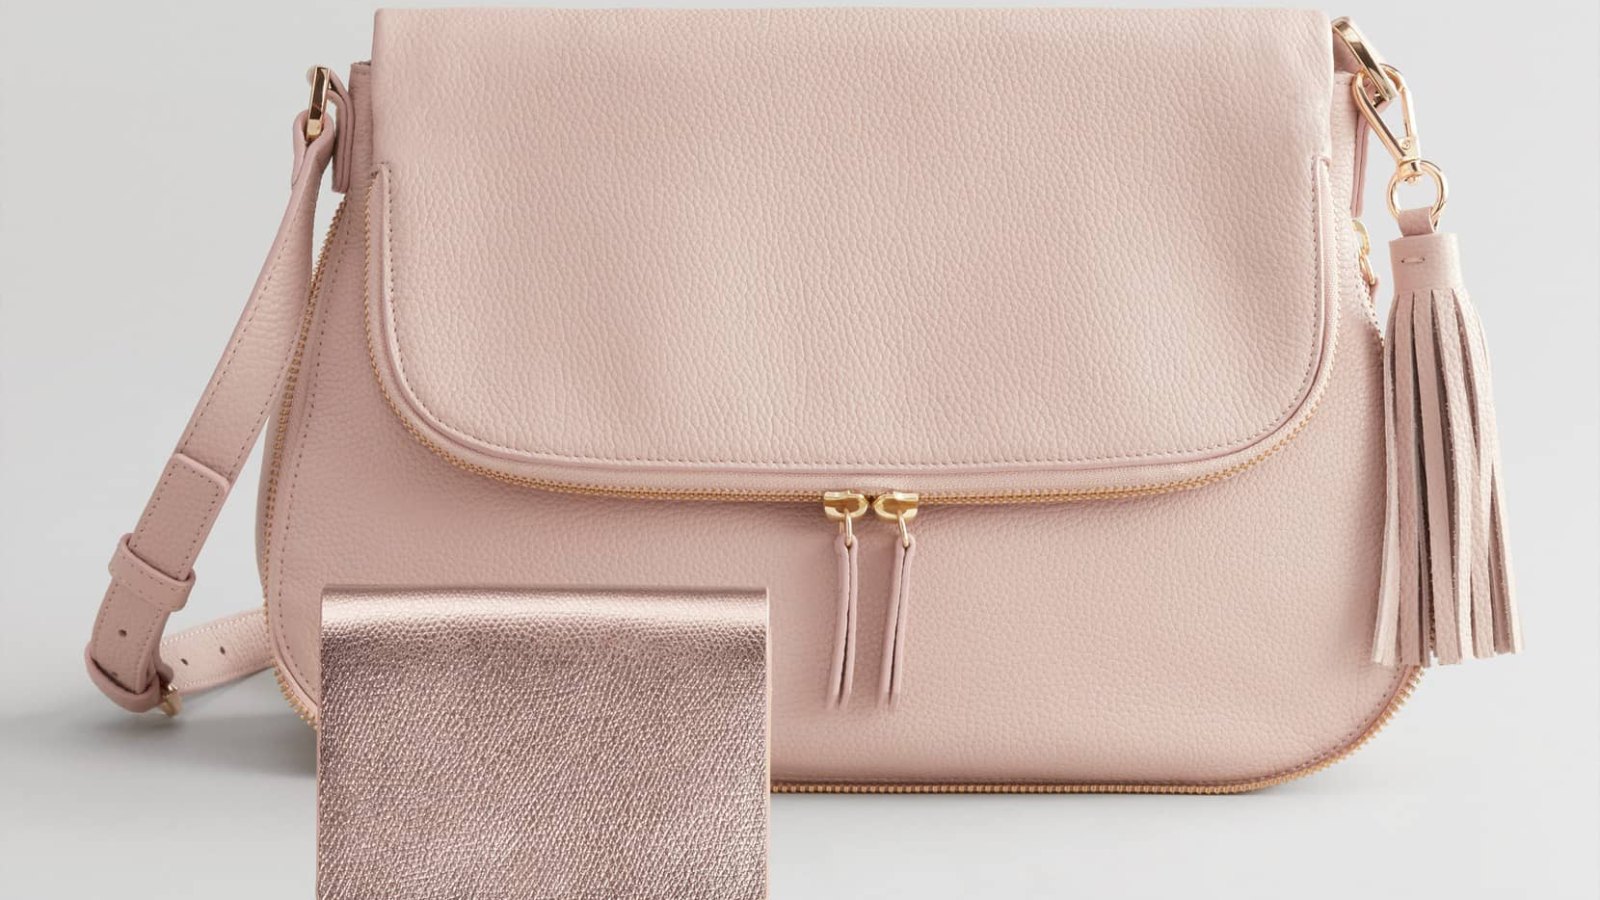 Kate Spade - Light Pink Pebbled Leather Expandable Shoulder Bag